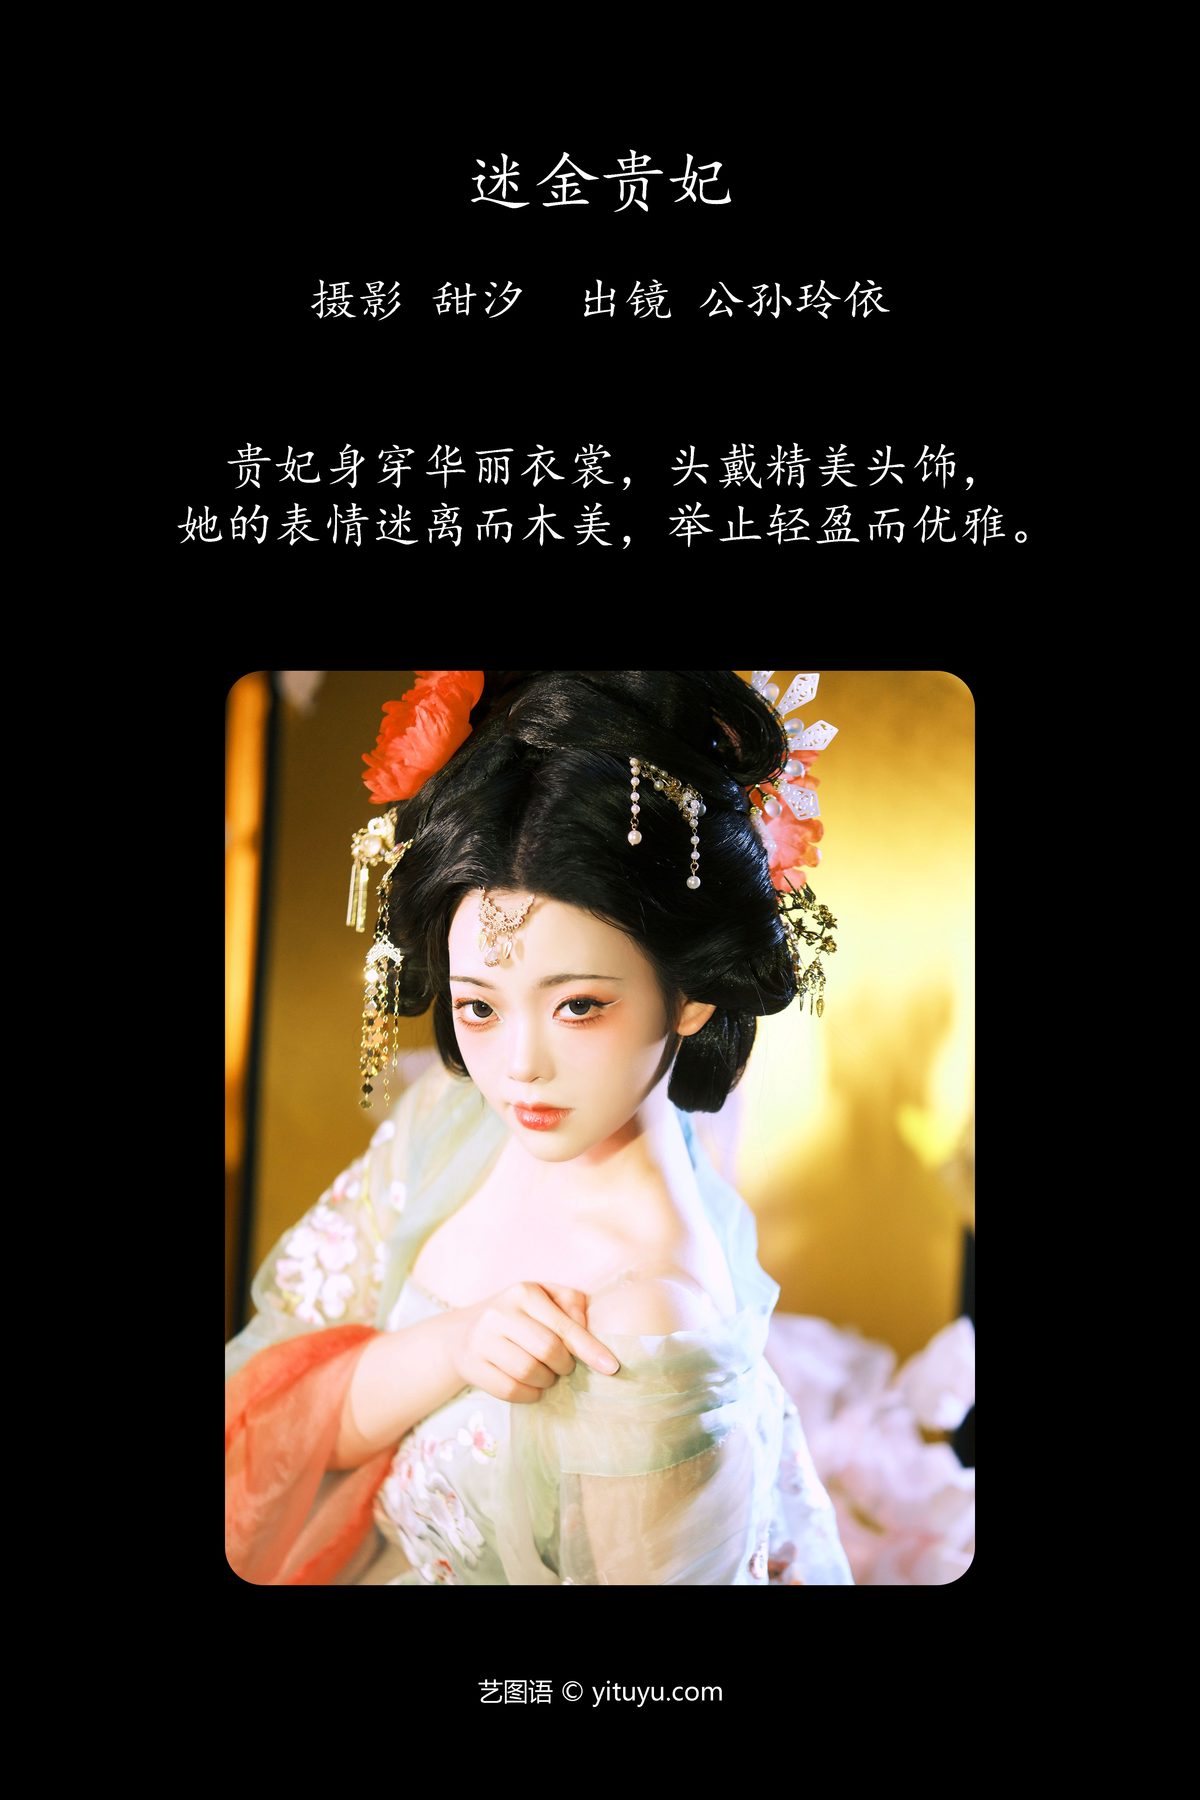 YiTuYu艺图语 Vol 6235 Gong Sun Ling Yi 0002 9927085433.jpg